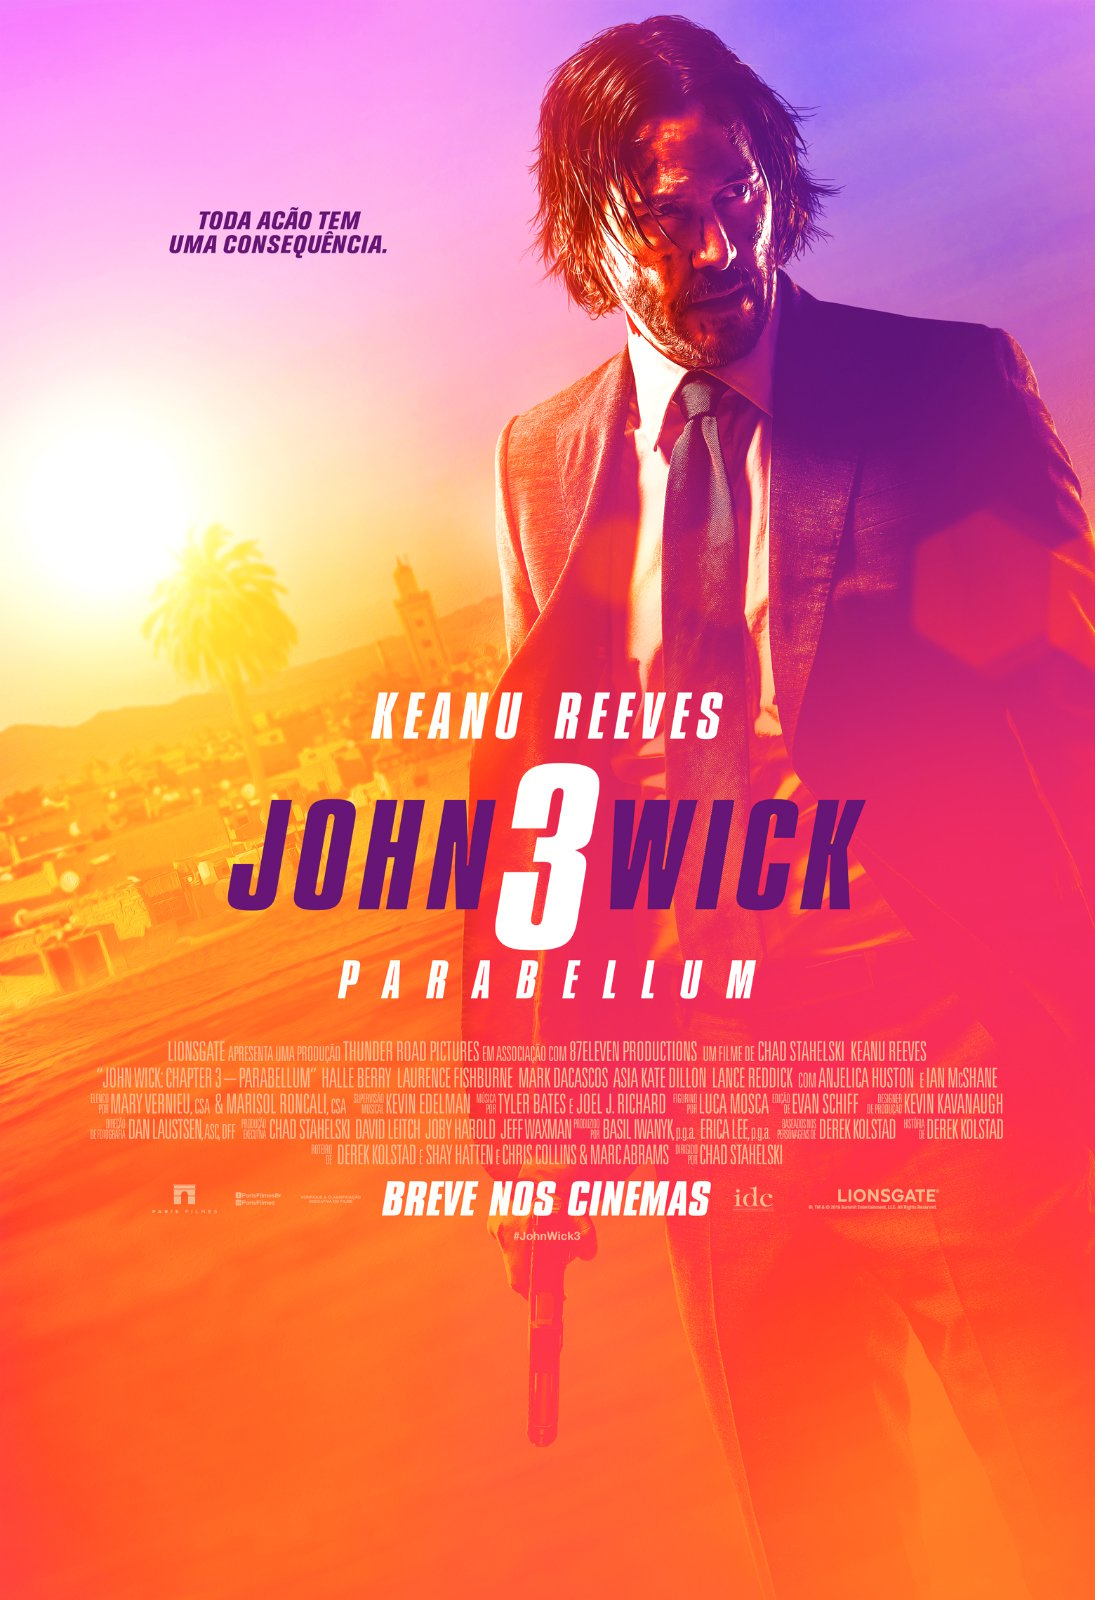 Onde assistir todos os filmes da franquia “John Wick”